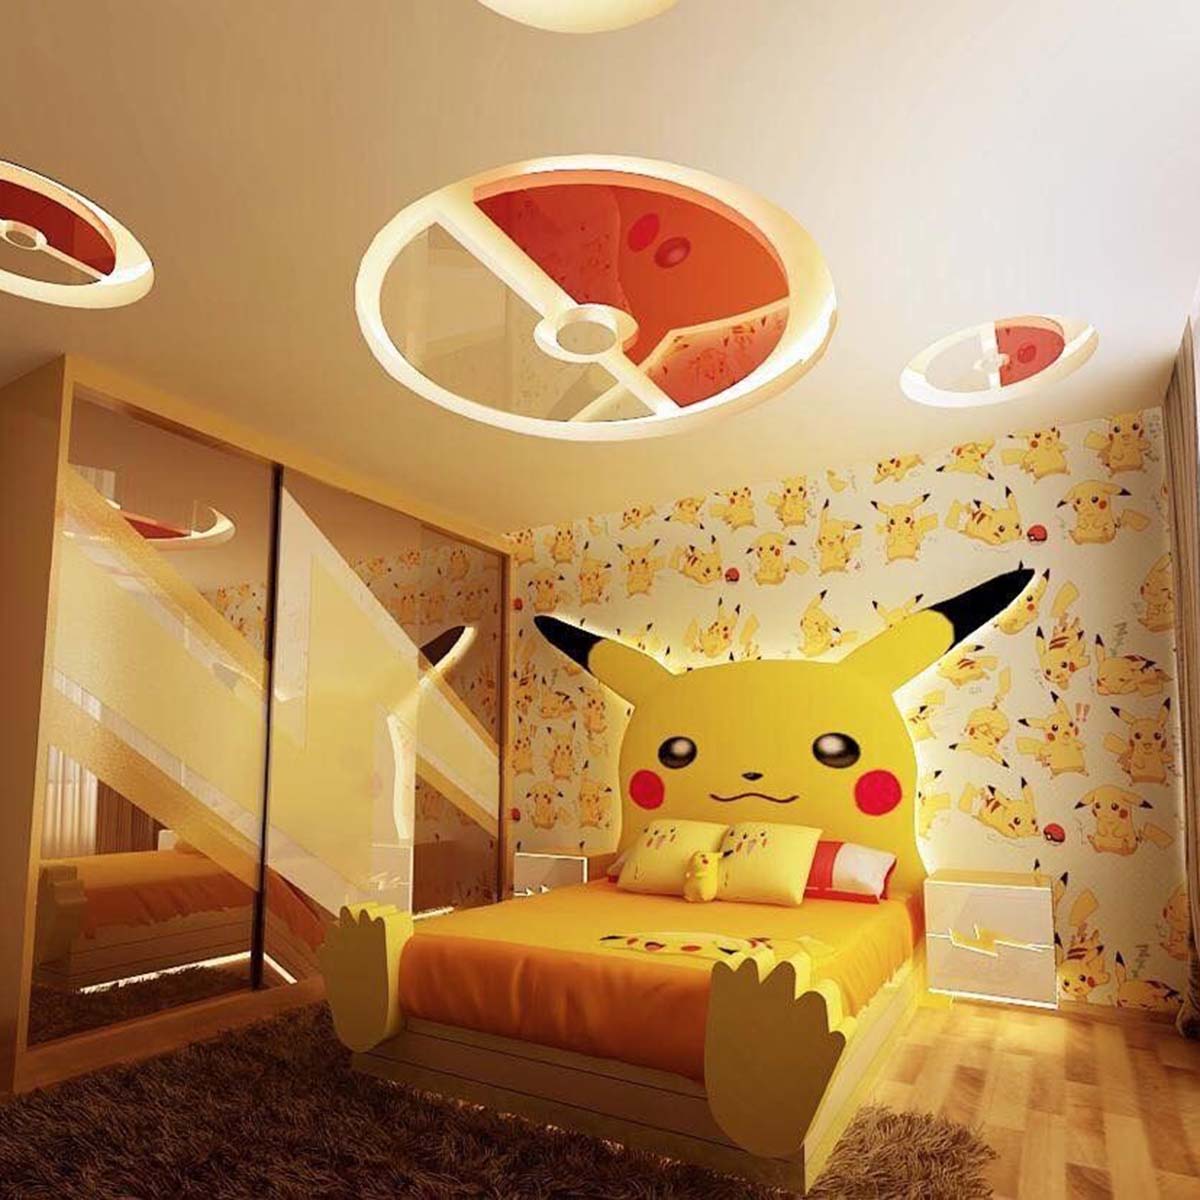 Phòng ngủ cho trẻ với chủ đề Pikachu. Nguồn: Pinterest